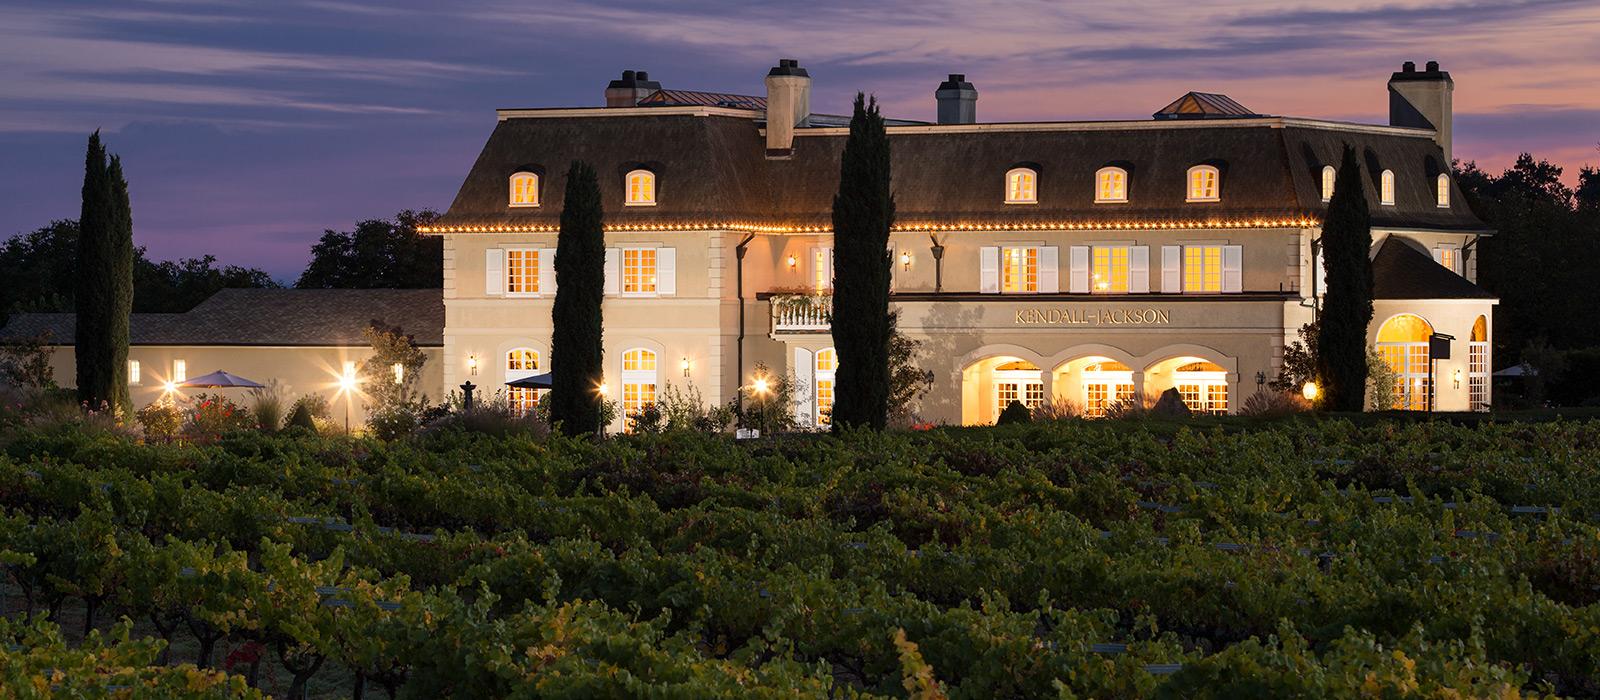 Kendall-Jackson Wine Estate